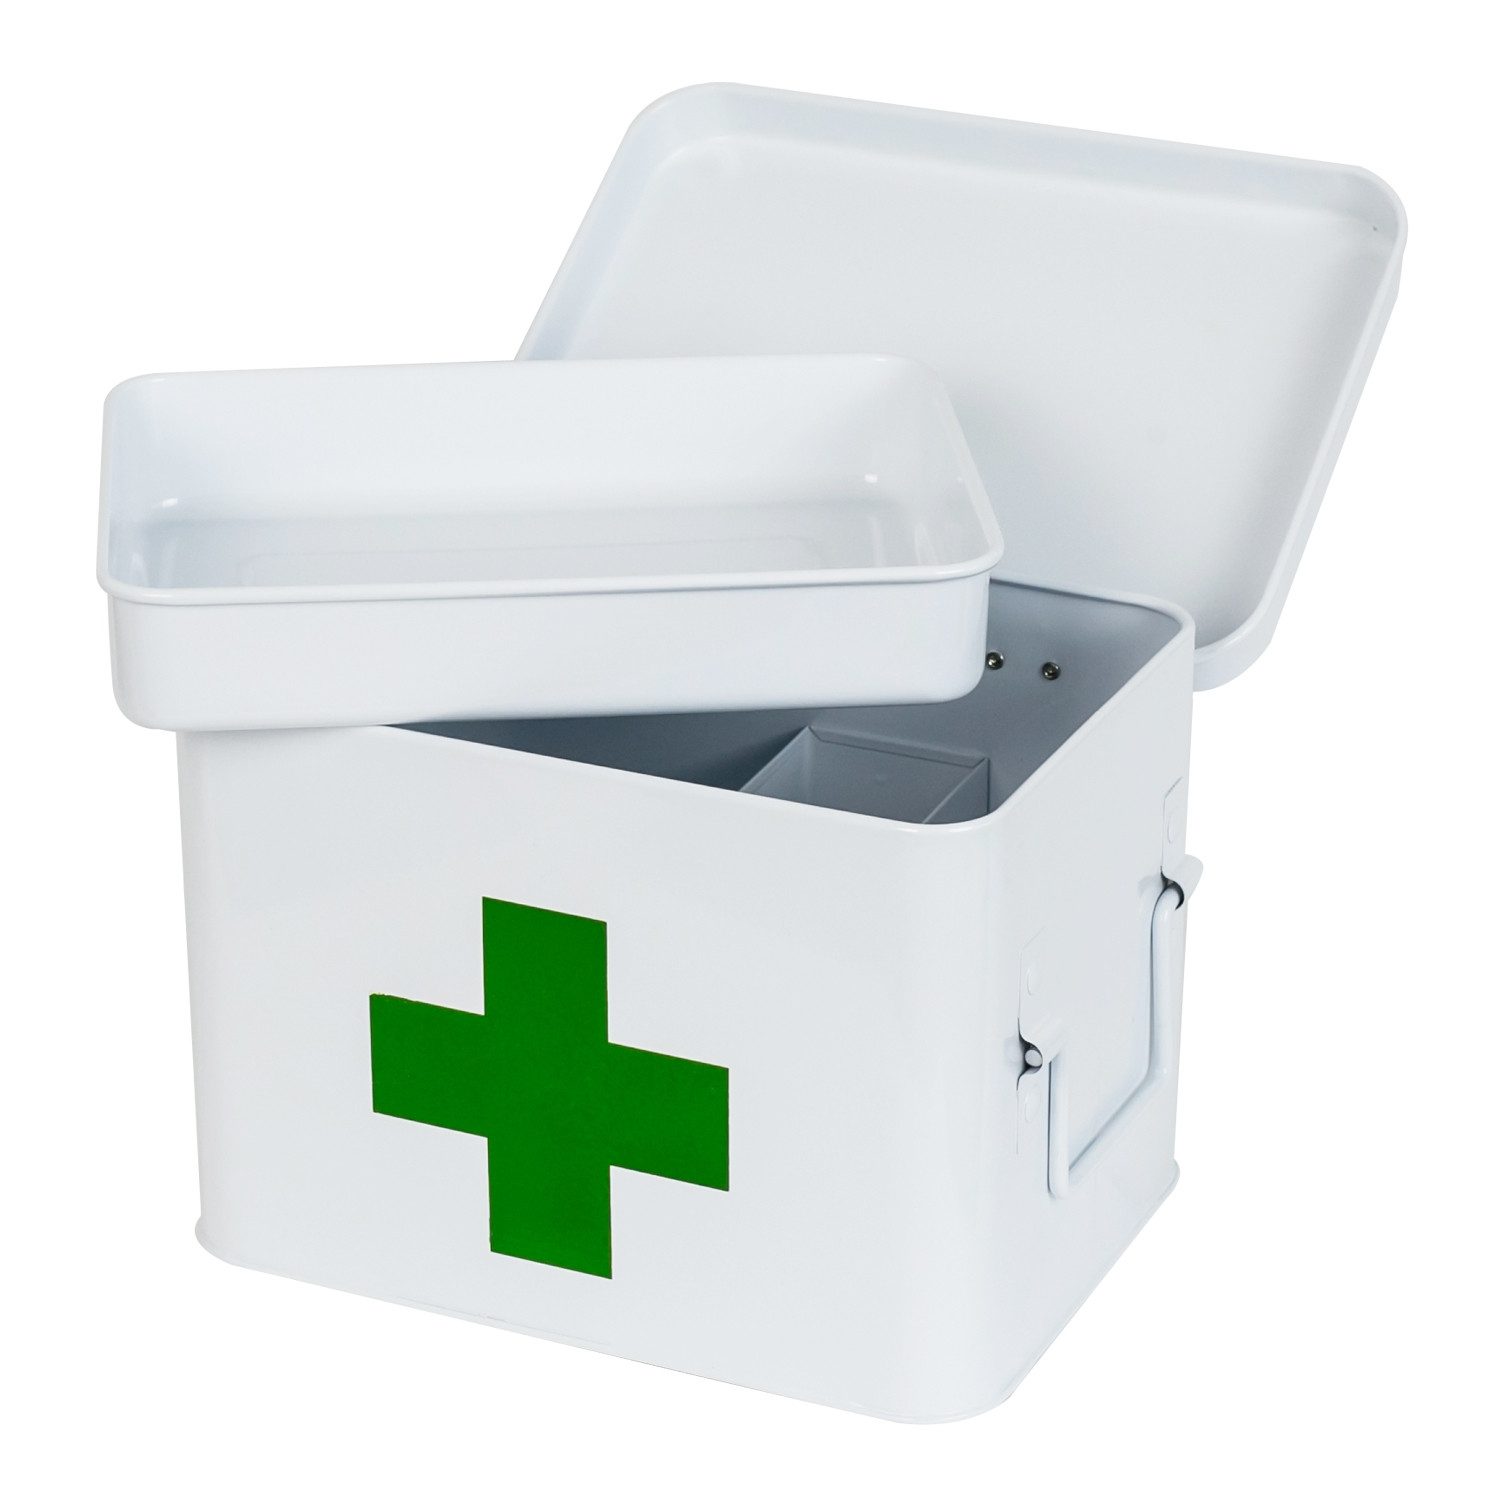 HMF Medizinschrank Erste Hilfe Koffer, Hausapotheke, Medikamentenkoffer aus Metall mit Tragegriffen, 22,5 x 16,5 x 15,5 cm, weiß